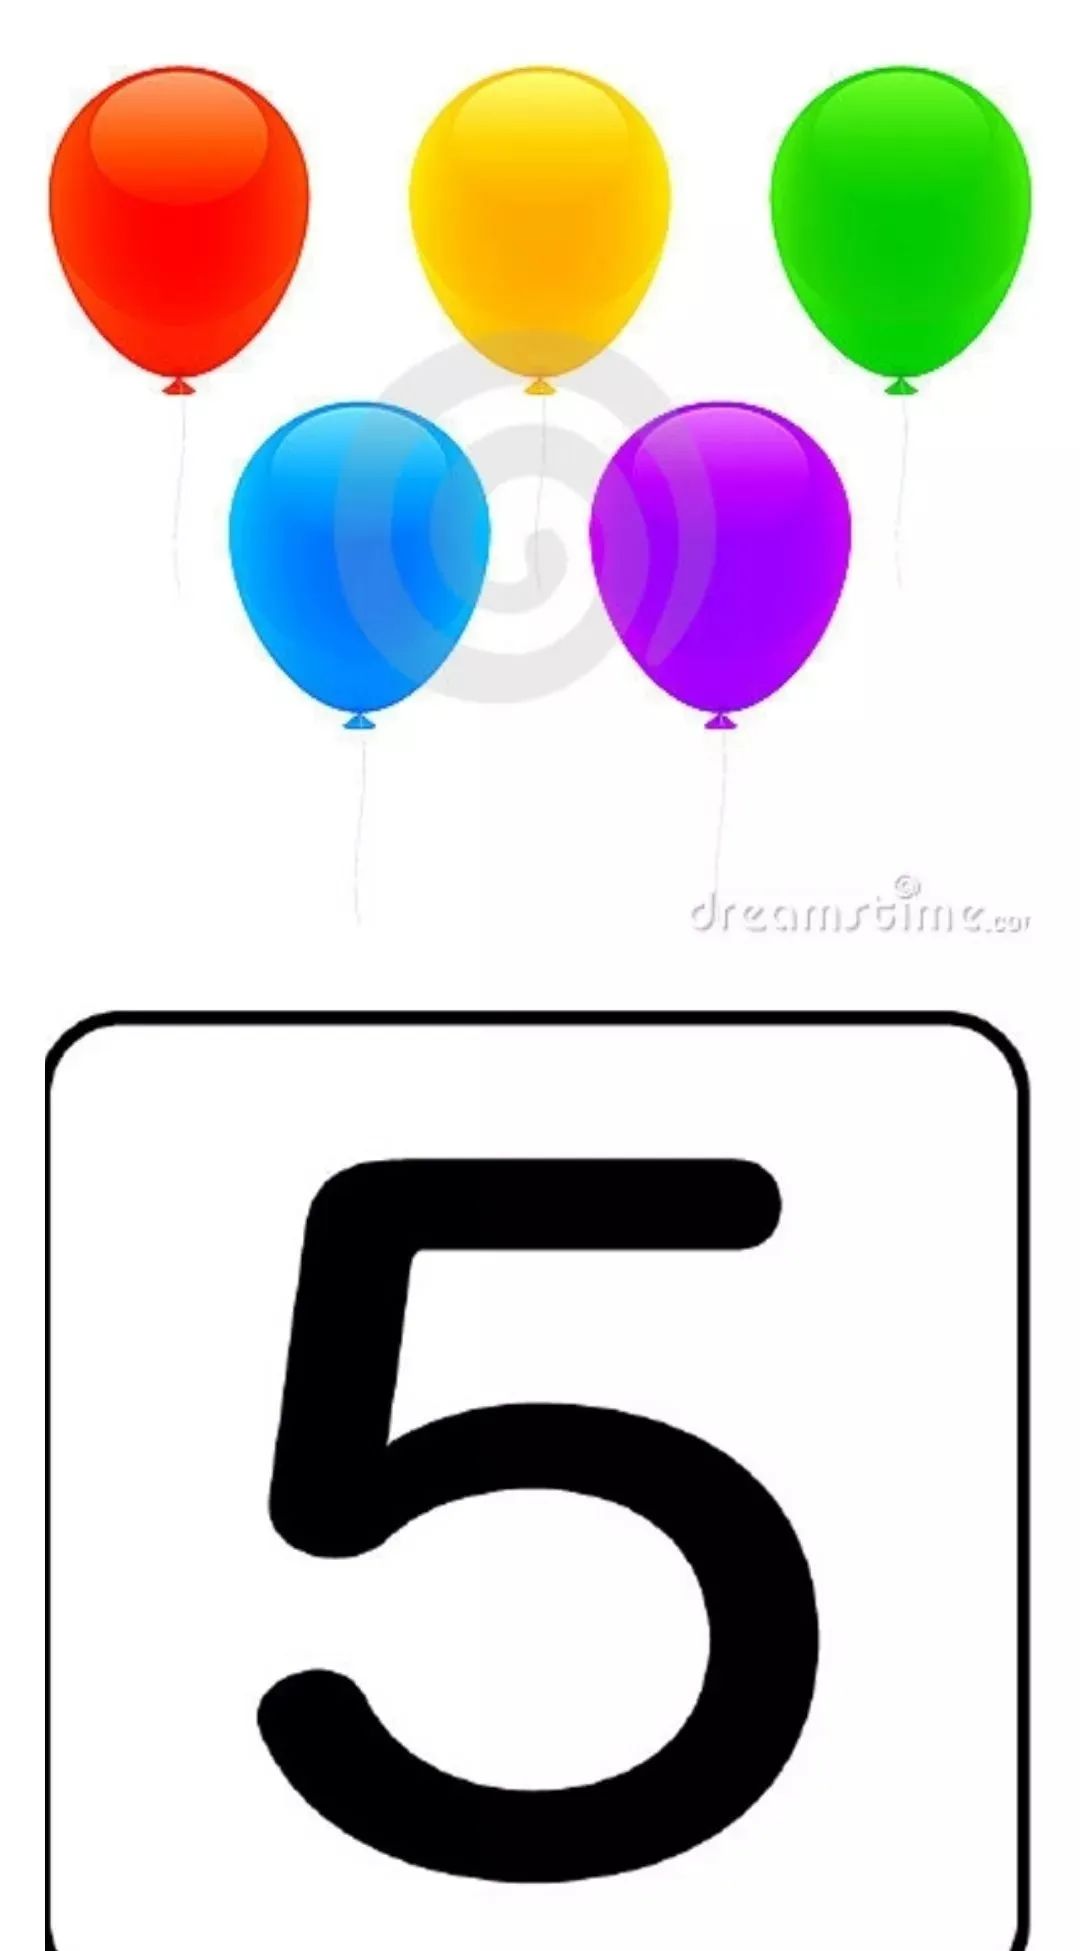 5个气球可以用数字5表示.我们数东西有多少,数到5,就可以用数字5表示.